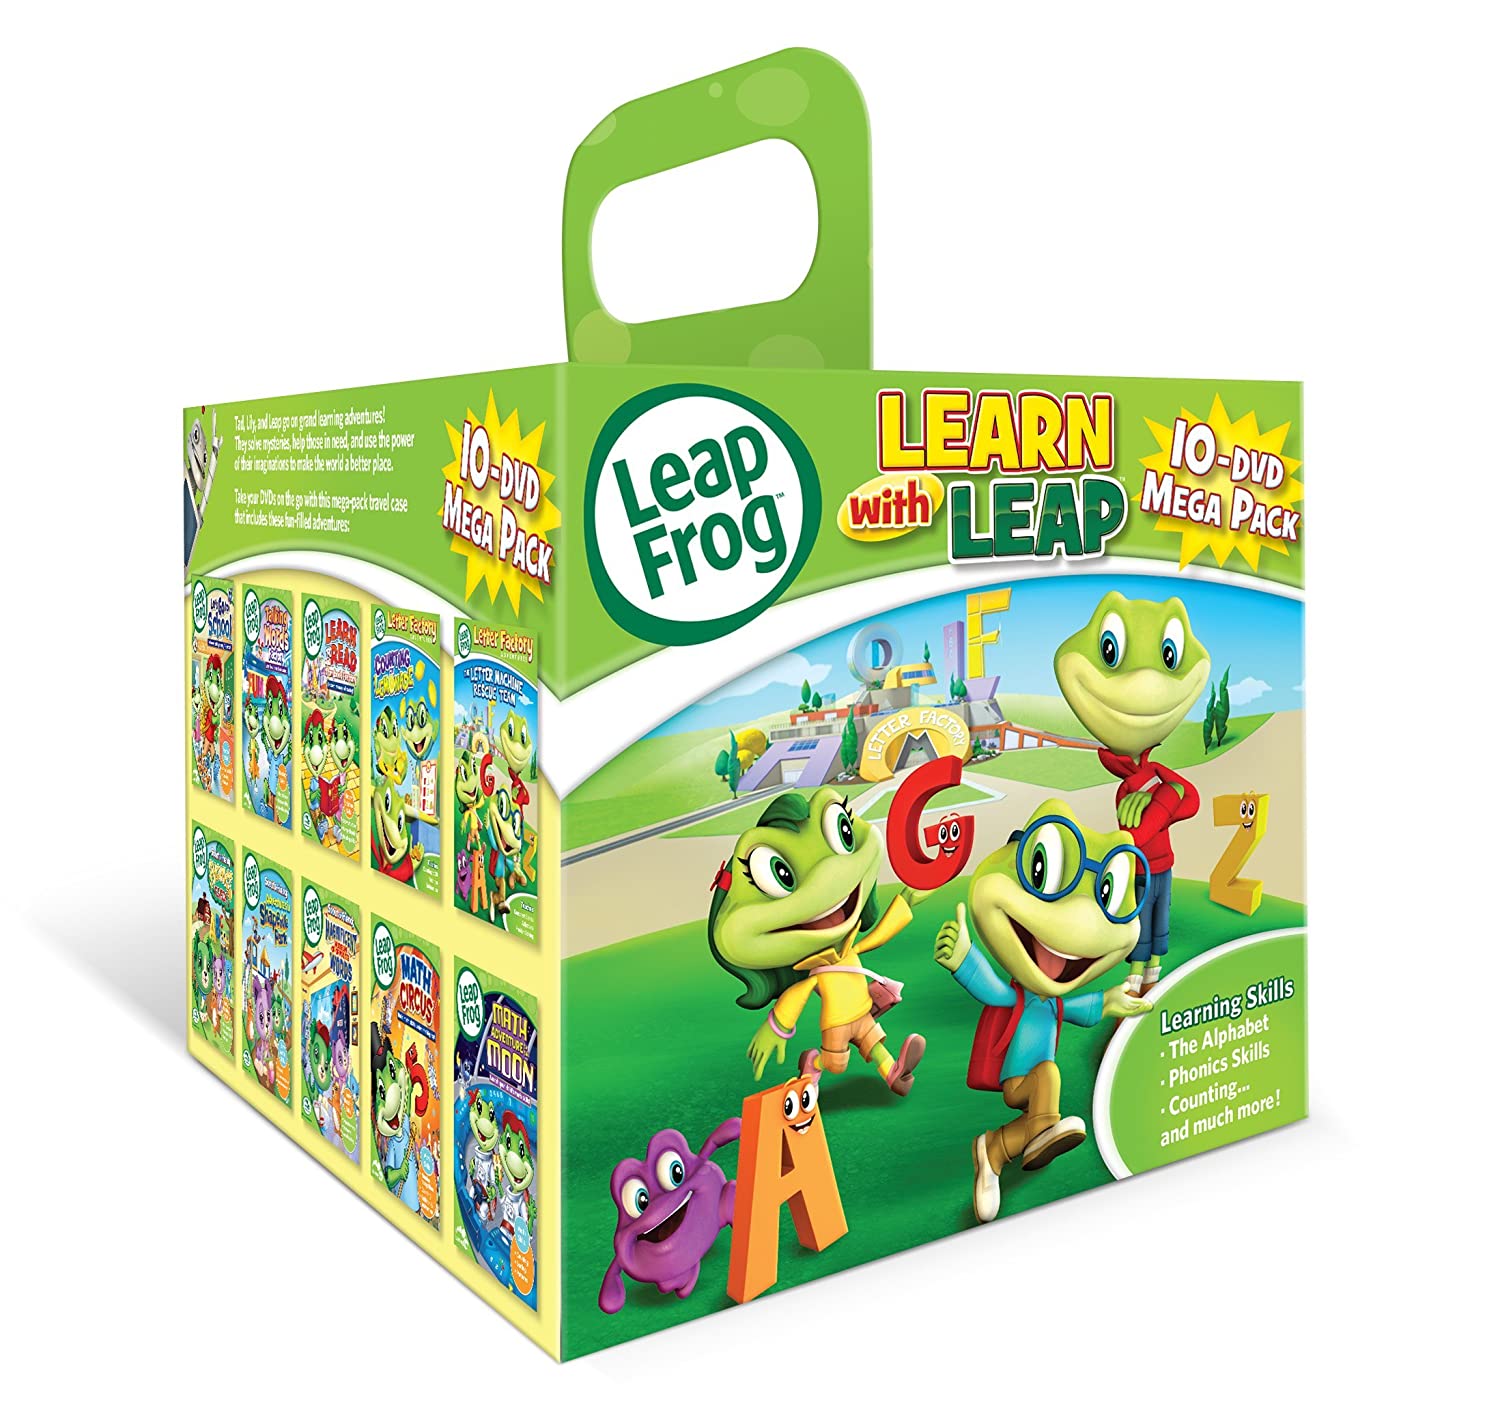 Leapfrog 10-DVD Mega Pack - For Kids and Family